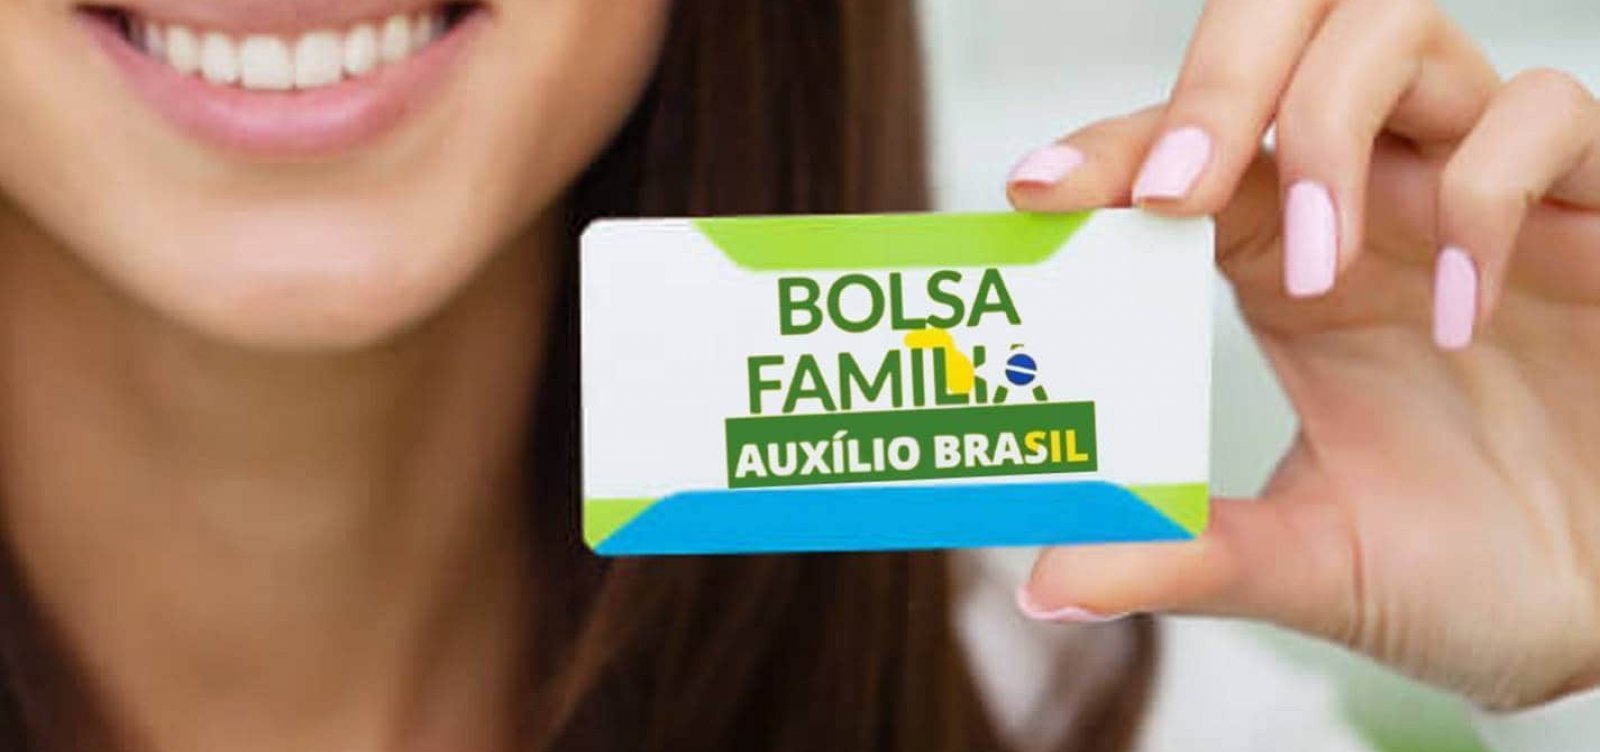 Auxílio Brasil Vai Atender Inscritos No Cadastro Único Veja Como Se Inscrever Direto Da Cidade 5131